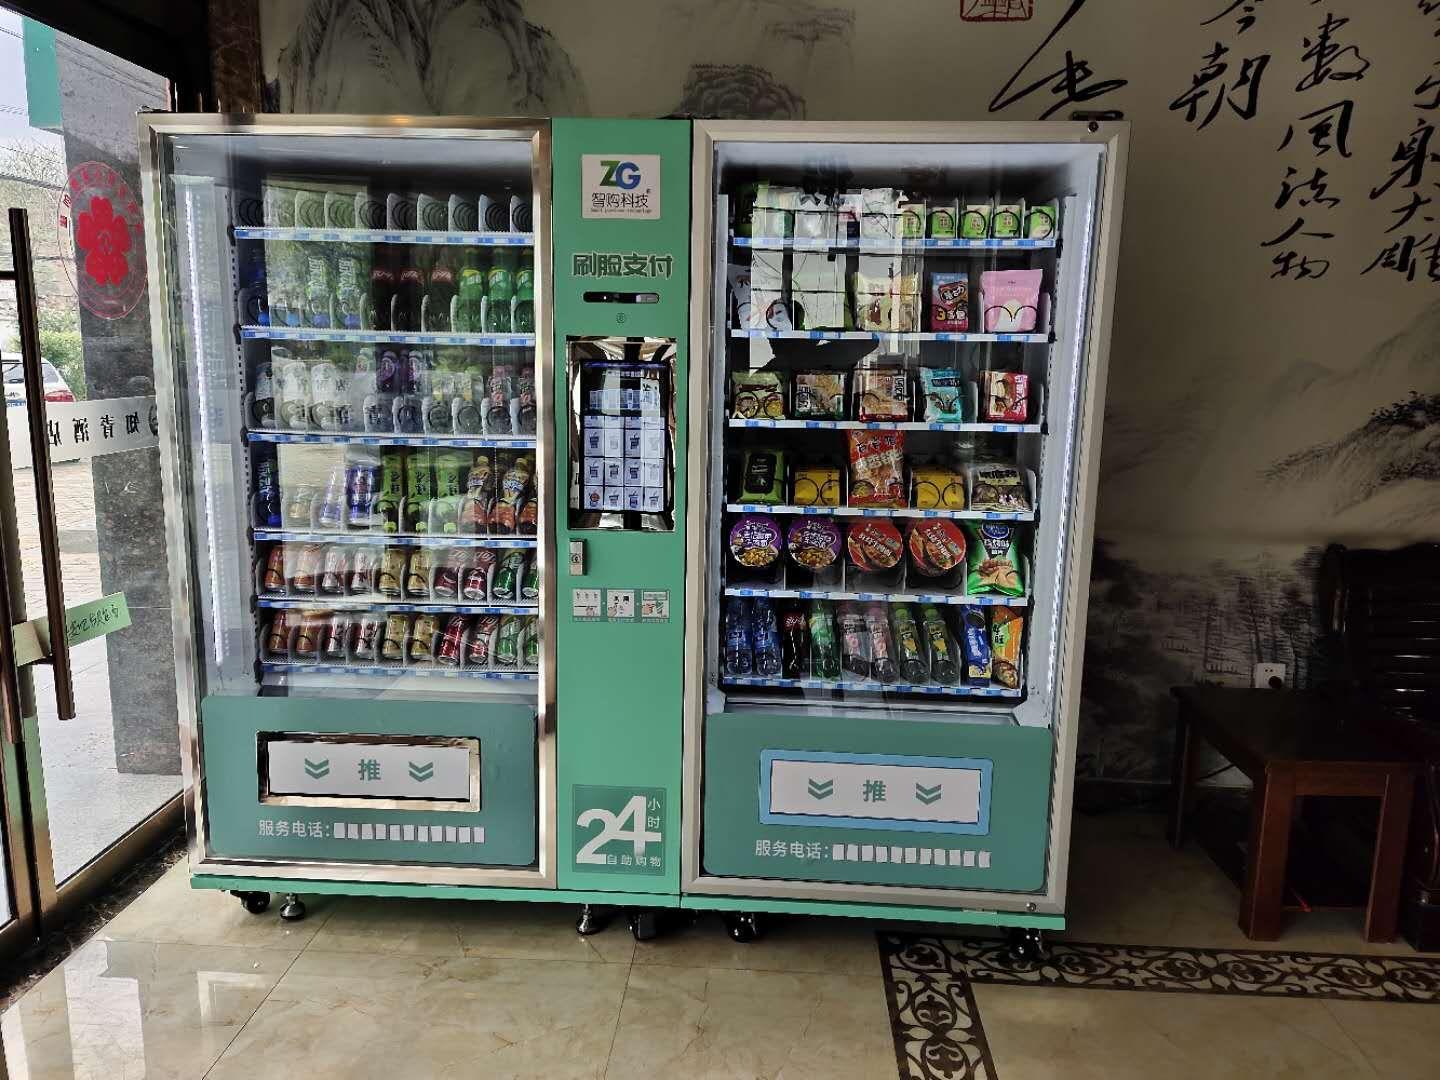 2,零食机饮料机是目前市面上较为常用的一种自助售货机,由于使用简单